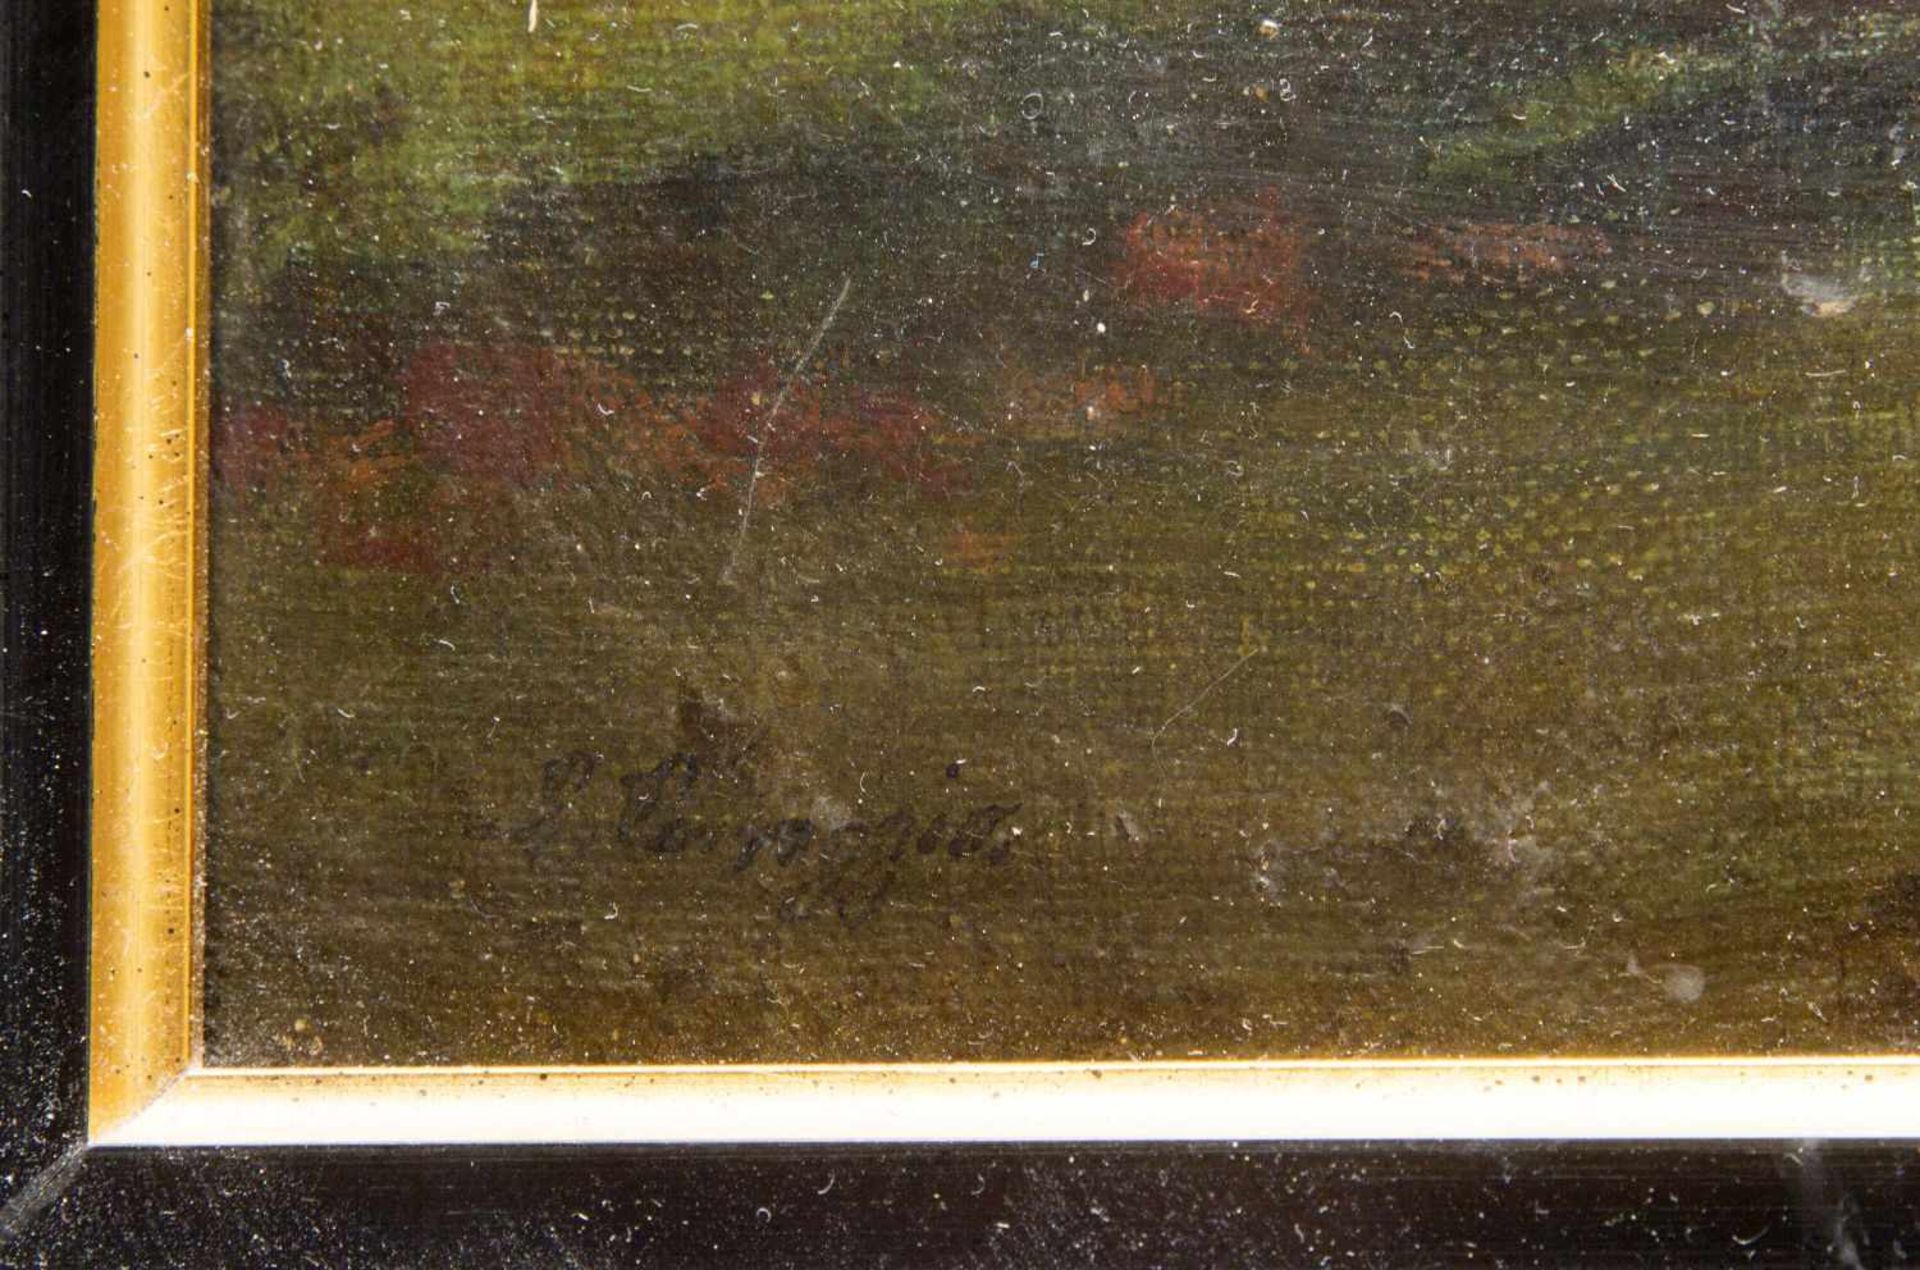 Correggio u.a.Herbstlicher Wald. Straßenmusikanten. 2 Gem. Öl/Lwd. bzw. Holz. Sign. 35 x 28 cm. - Bild 3 aus 6